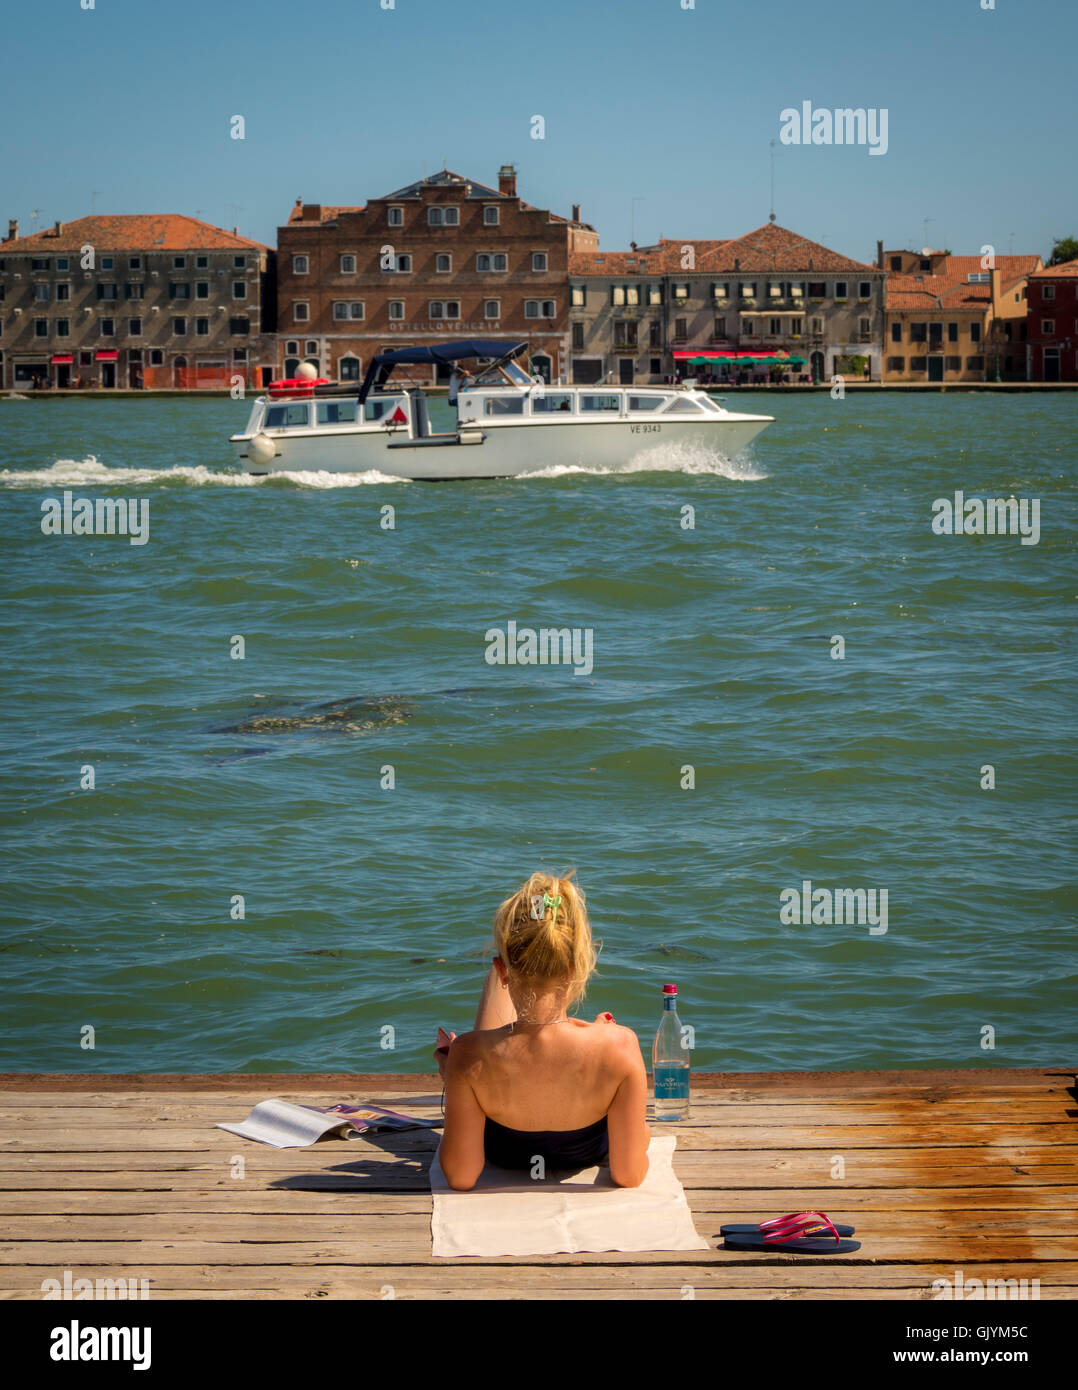 Junge Frau liegend auf einem Holzsteg über den Canale della Giudecca, mit einem Boot und in der Ferne die Insel Giudecca. V Stockfoto